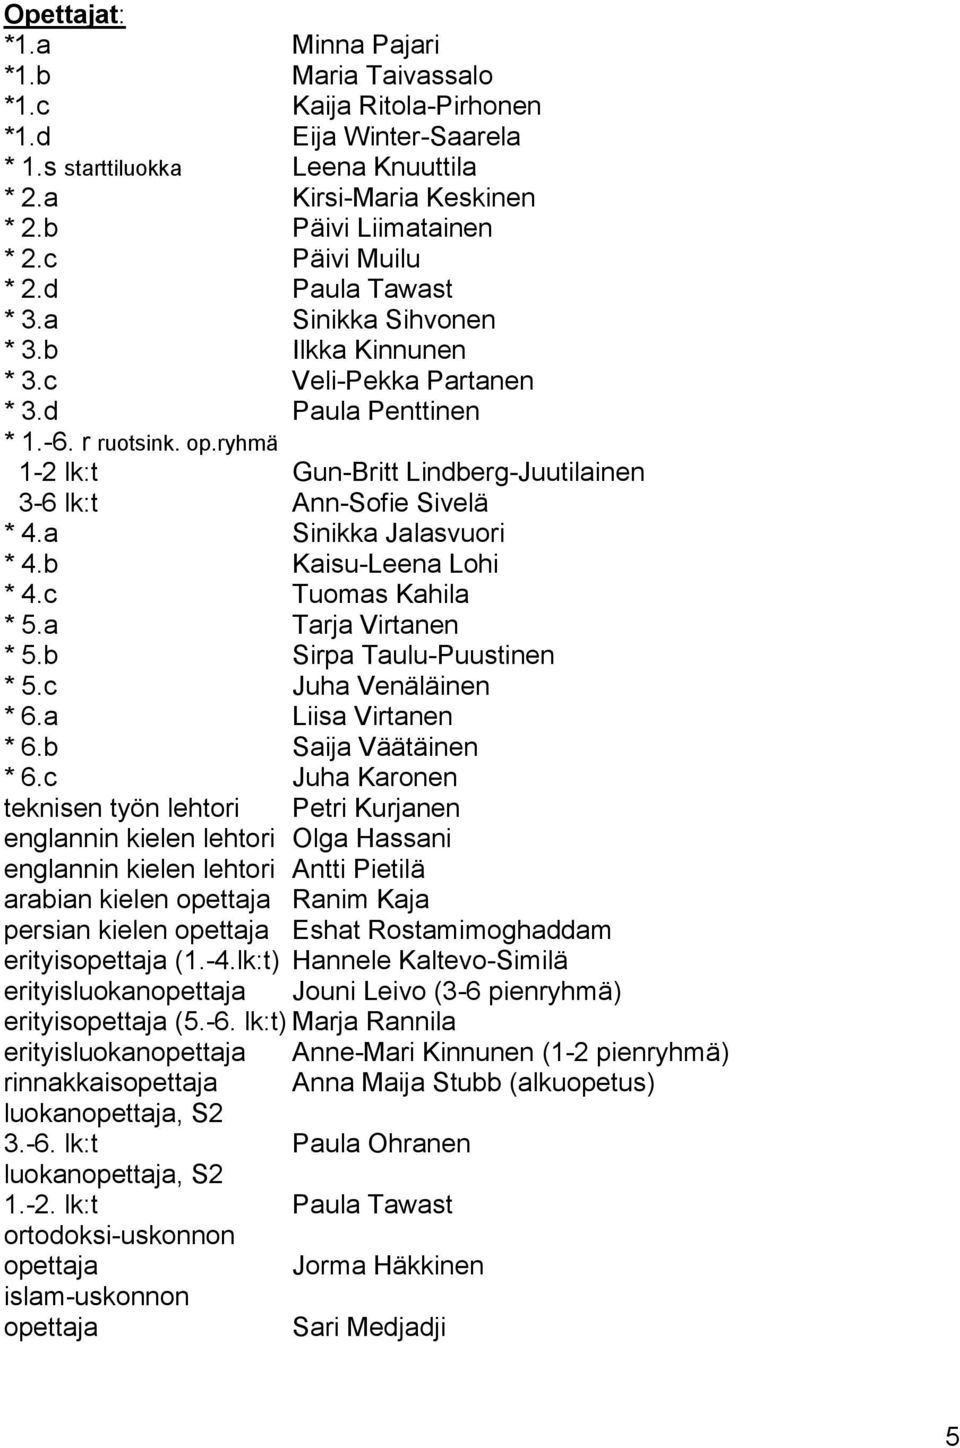 ryhmä 1-2 lk:t Gun-Britt Lindberg-Juutilainen 3-6 lk:t Ann-Sofie Sivelä * 4.a Sinikka Jalasvuori * 4.b Kaisu-Leena Lohi * 4.c Tuomas Kahila * 5.a Tarja Virtanen * 5.b Sirpa Taulu-Puustinen * 5.